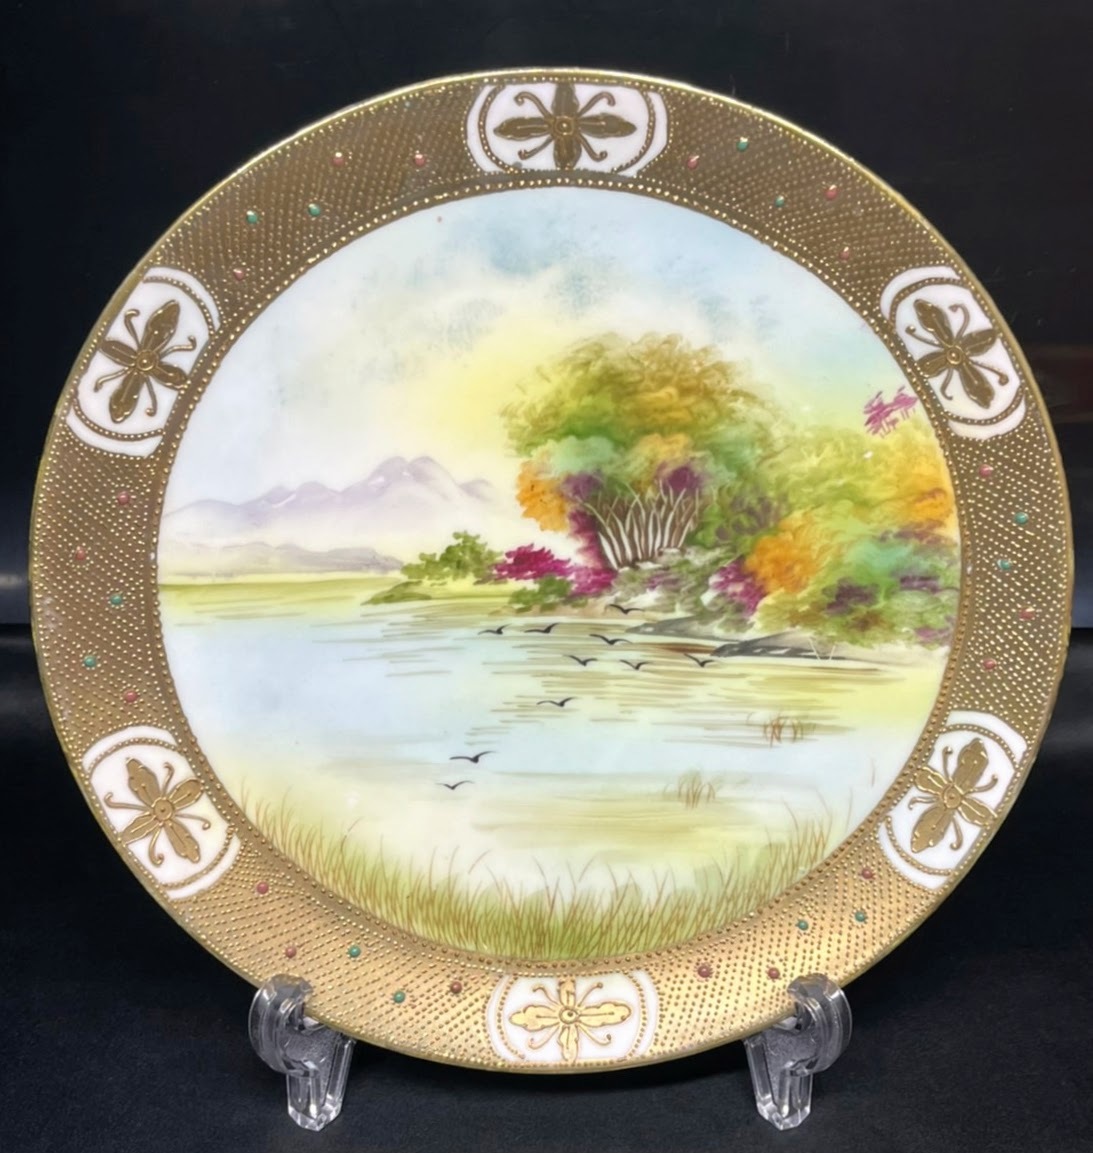 オールドノリタケ 金点盛り湖畔風景文飾り皿 ジュエル プレート